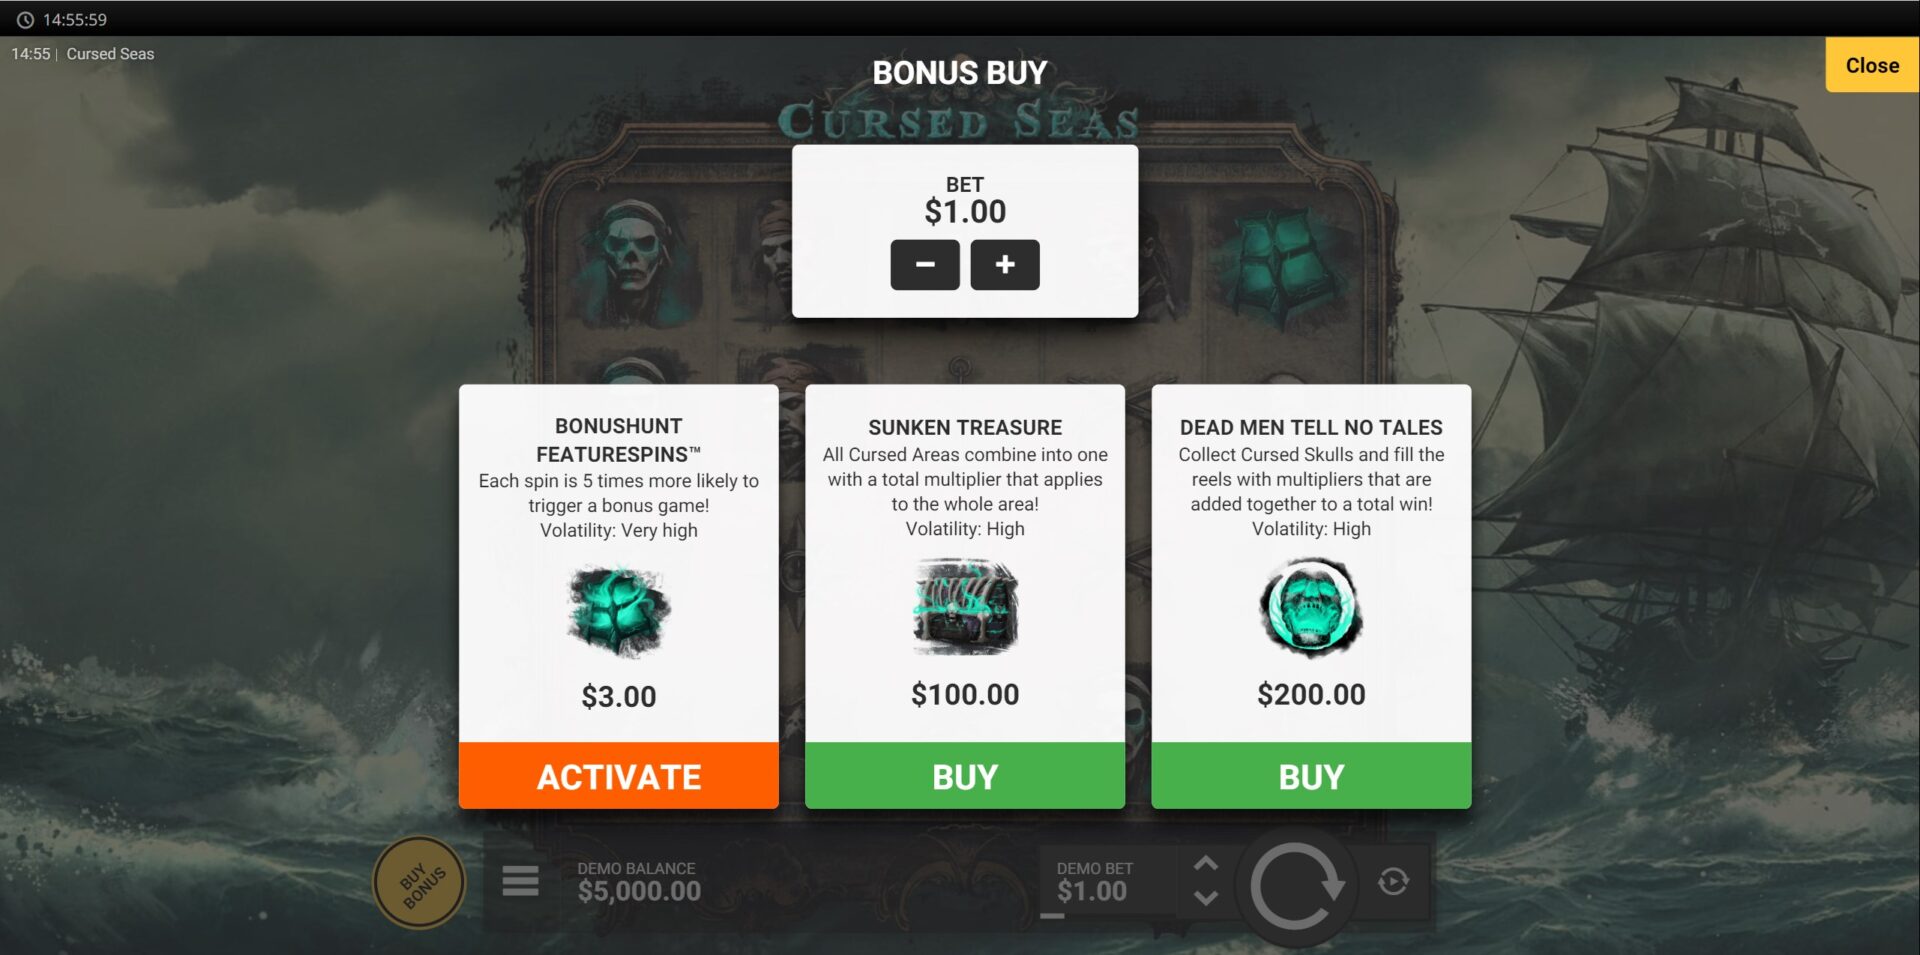 Cursed Seas Slot - Bonus Buy Options